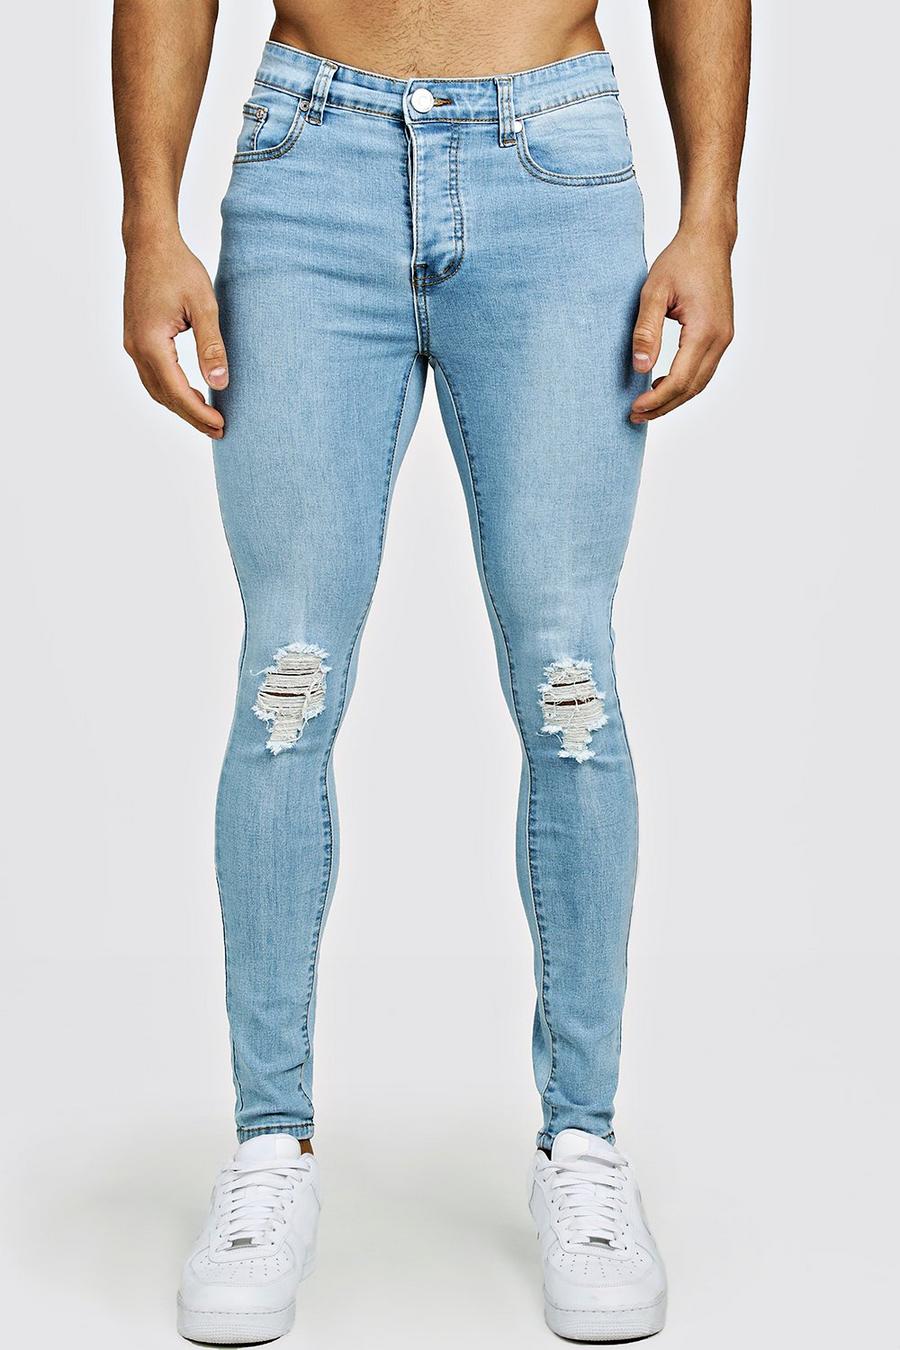 כחול בהיר סופר סקיני ג'ינס עם קרעים בברכיים image number 1